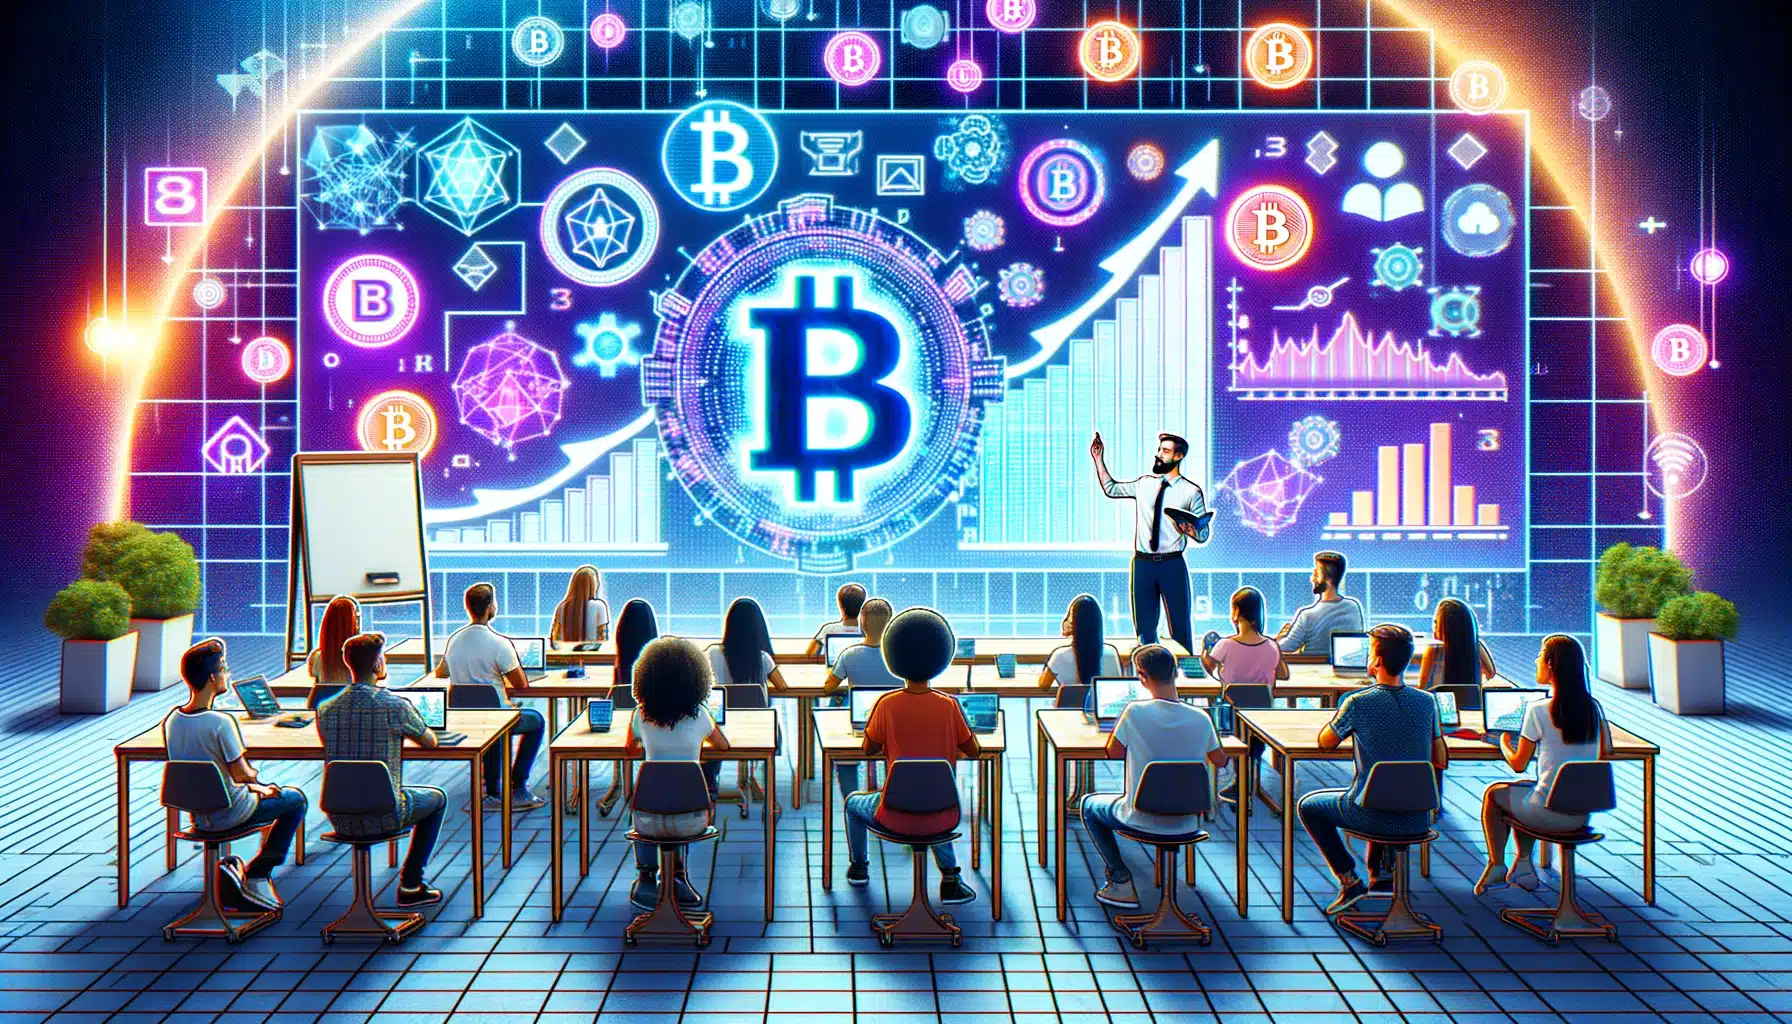 Programy edukacyjne z zakresu blockchain zyskują na popularności w okresie hossy na rynku kryptowalut